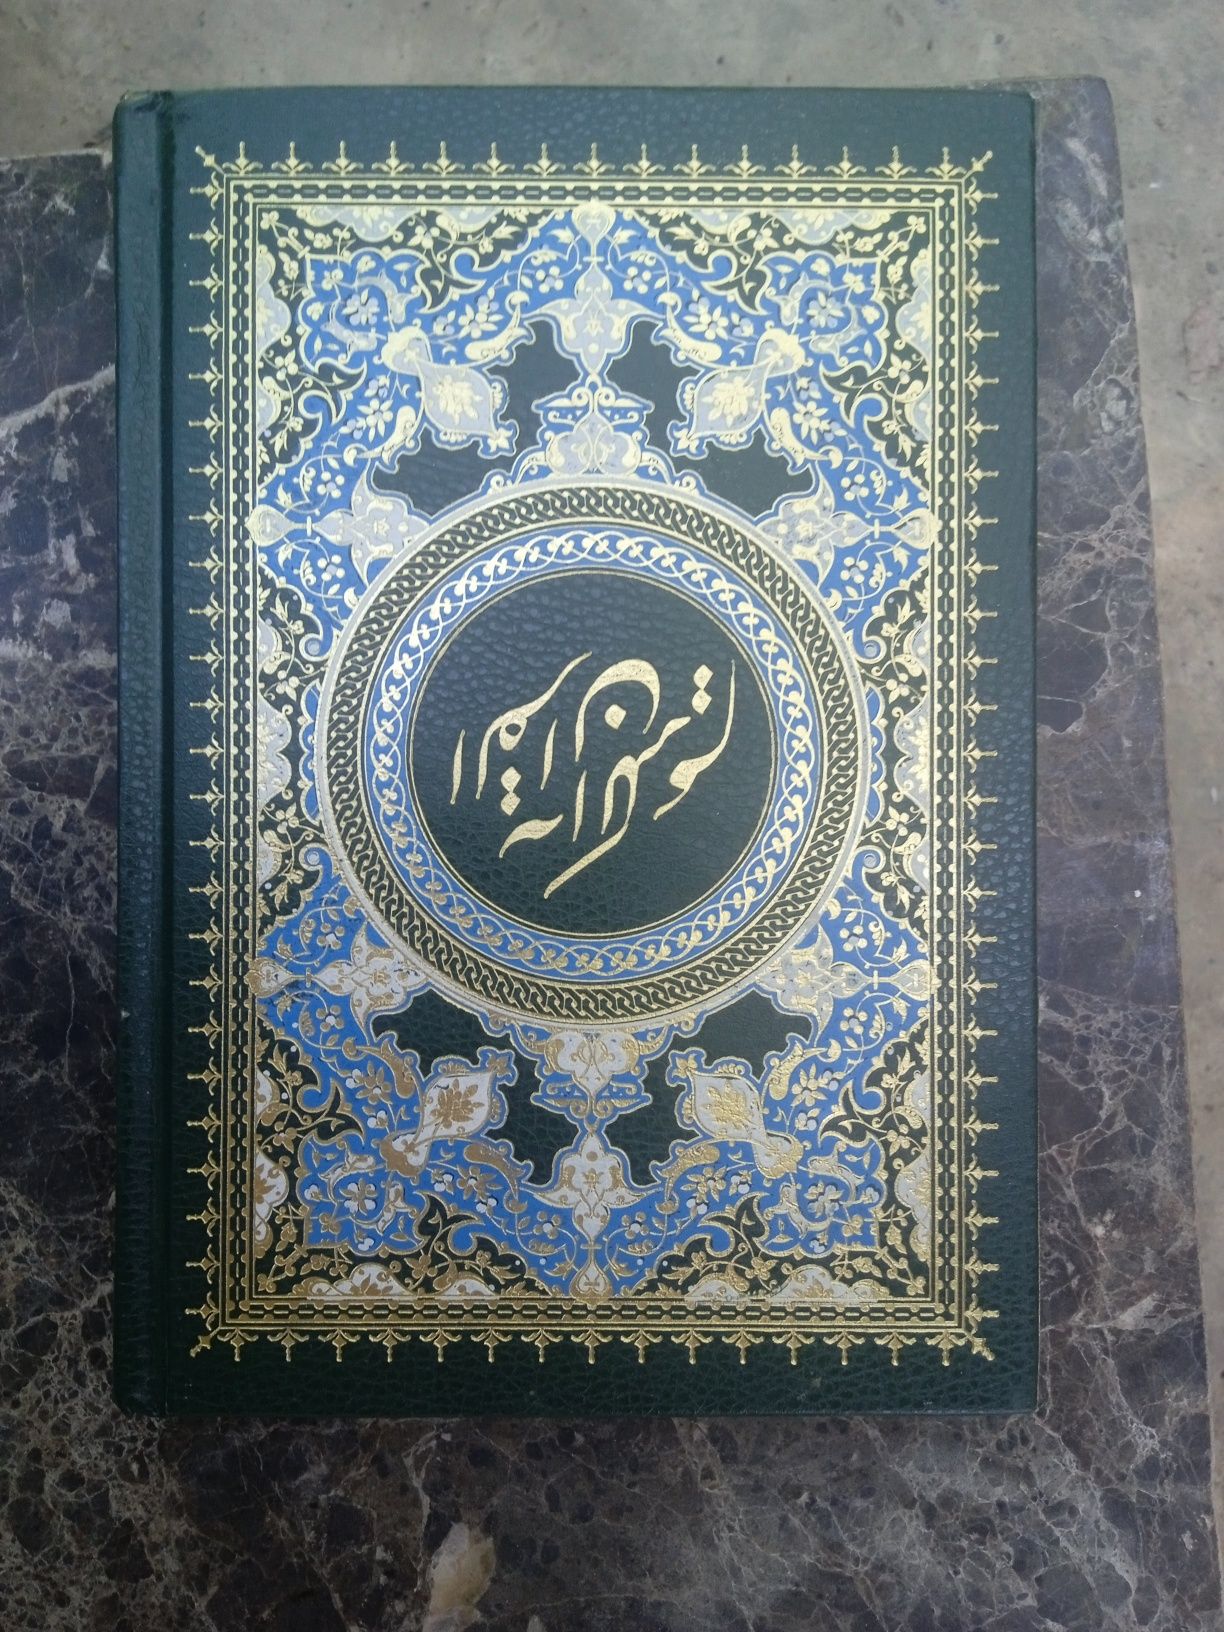 Коран подарочный на арабском.И две книги на арабском.